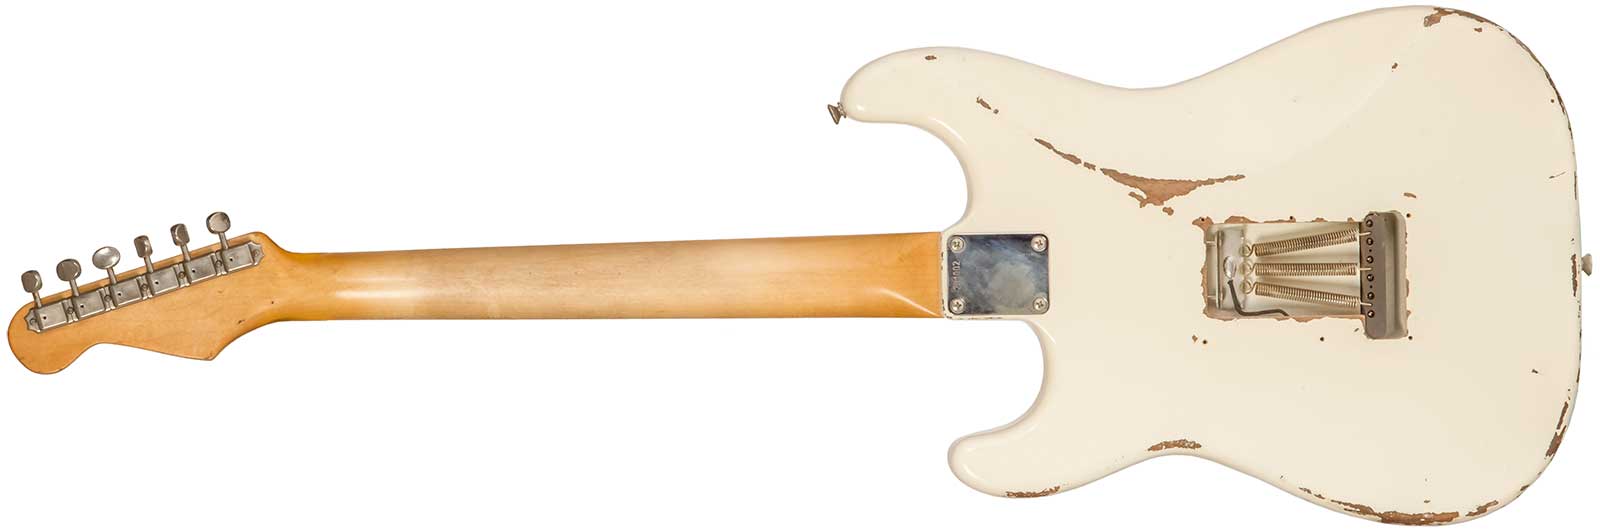 Rebelrelic S-series 1962 3s Trem Rw #231002 - Olympic White - Elektrische gitaar in Str-vorm - Variation 1